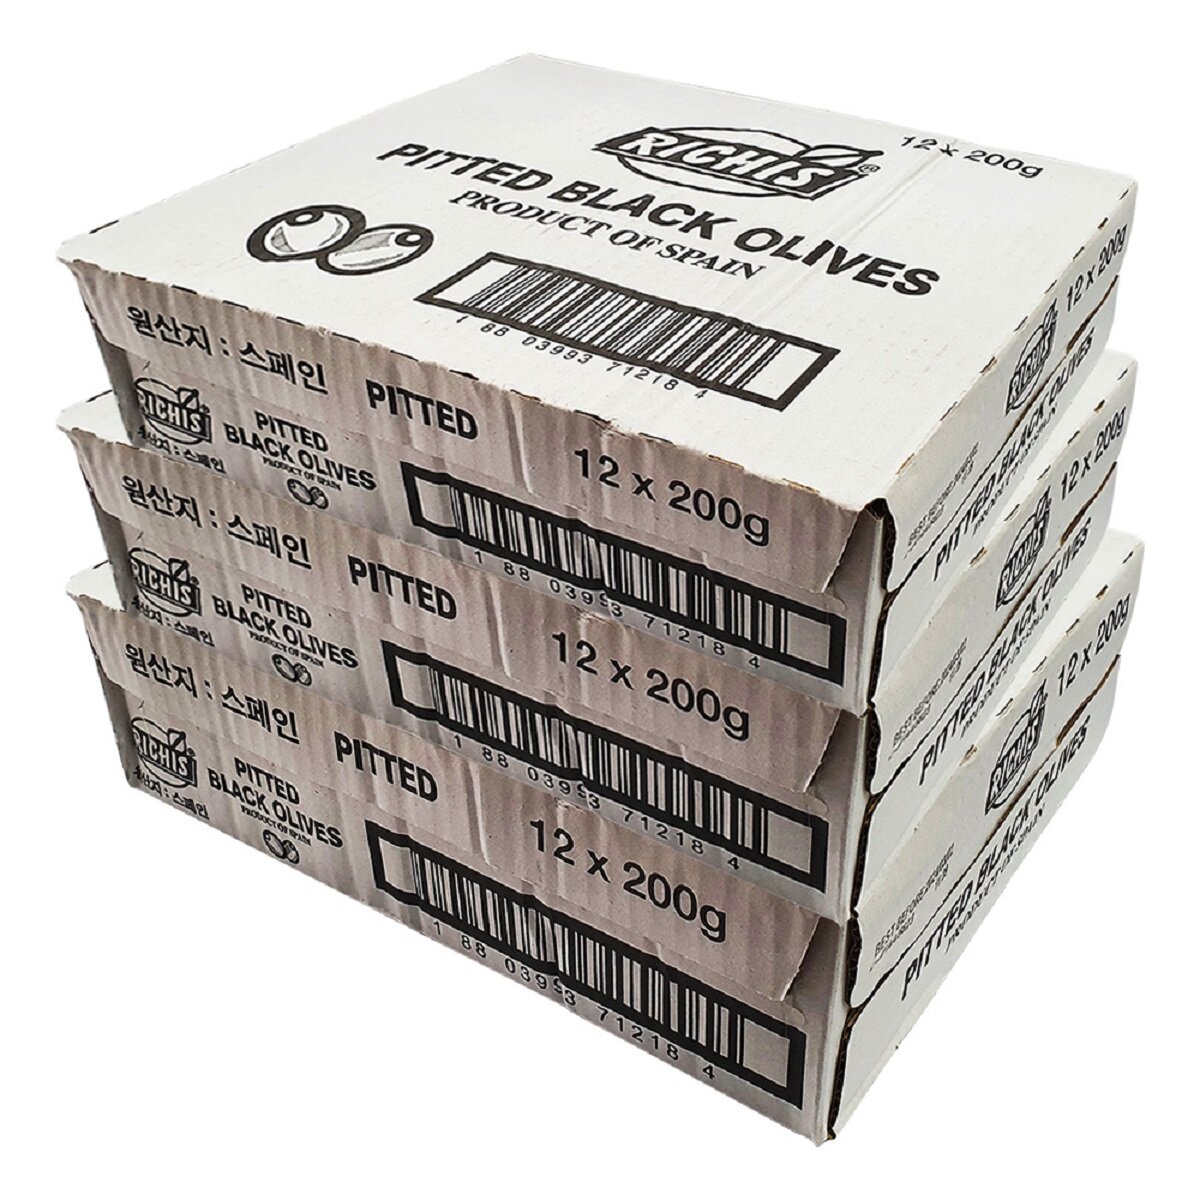 리치스 블랙올리브 200g x 12 x 3 Box - 슬라이스